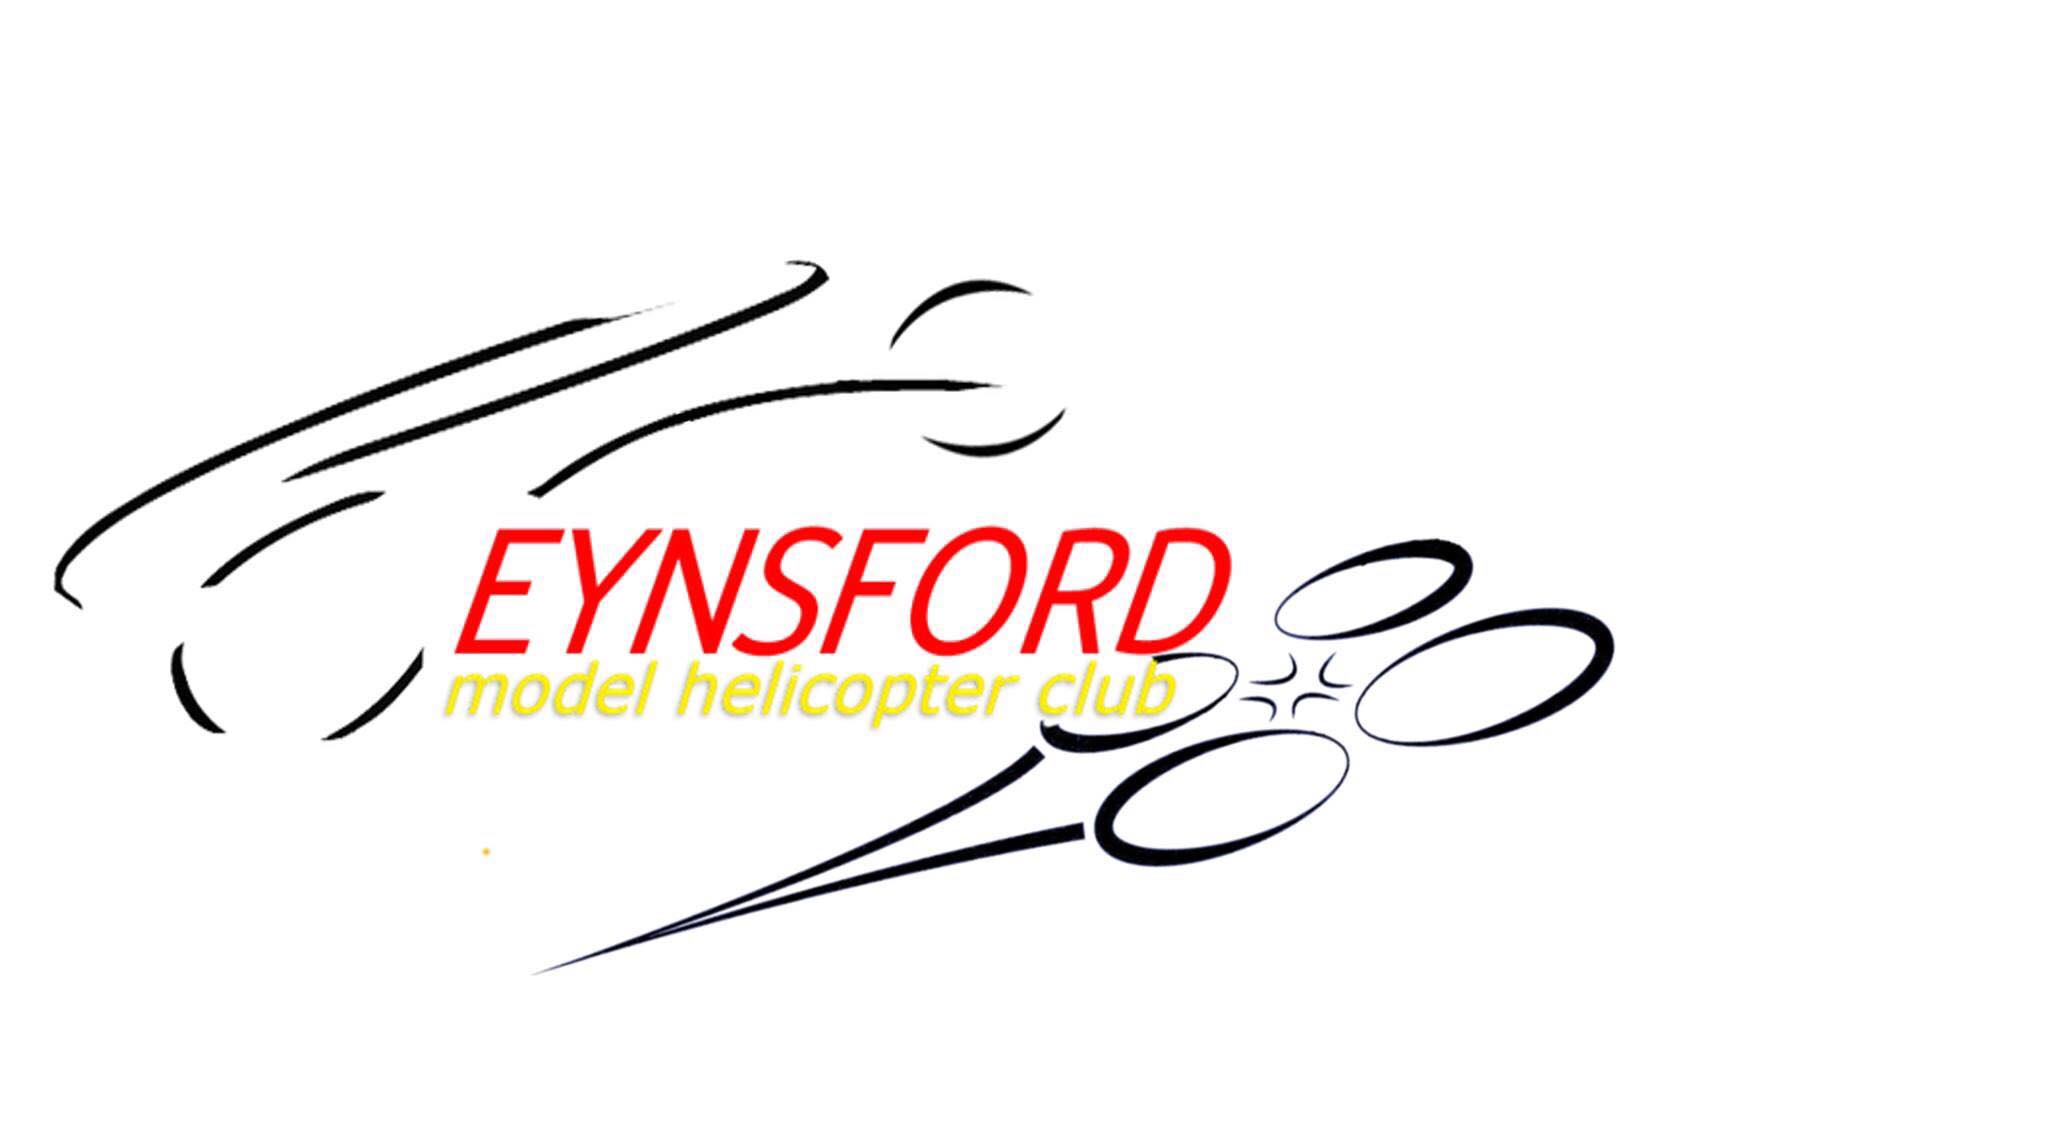 Eynsford model helicopter club